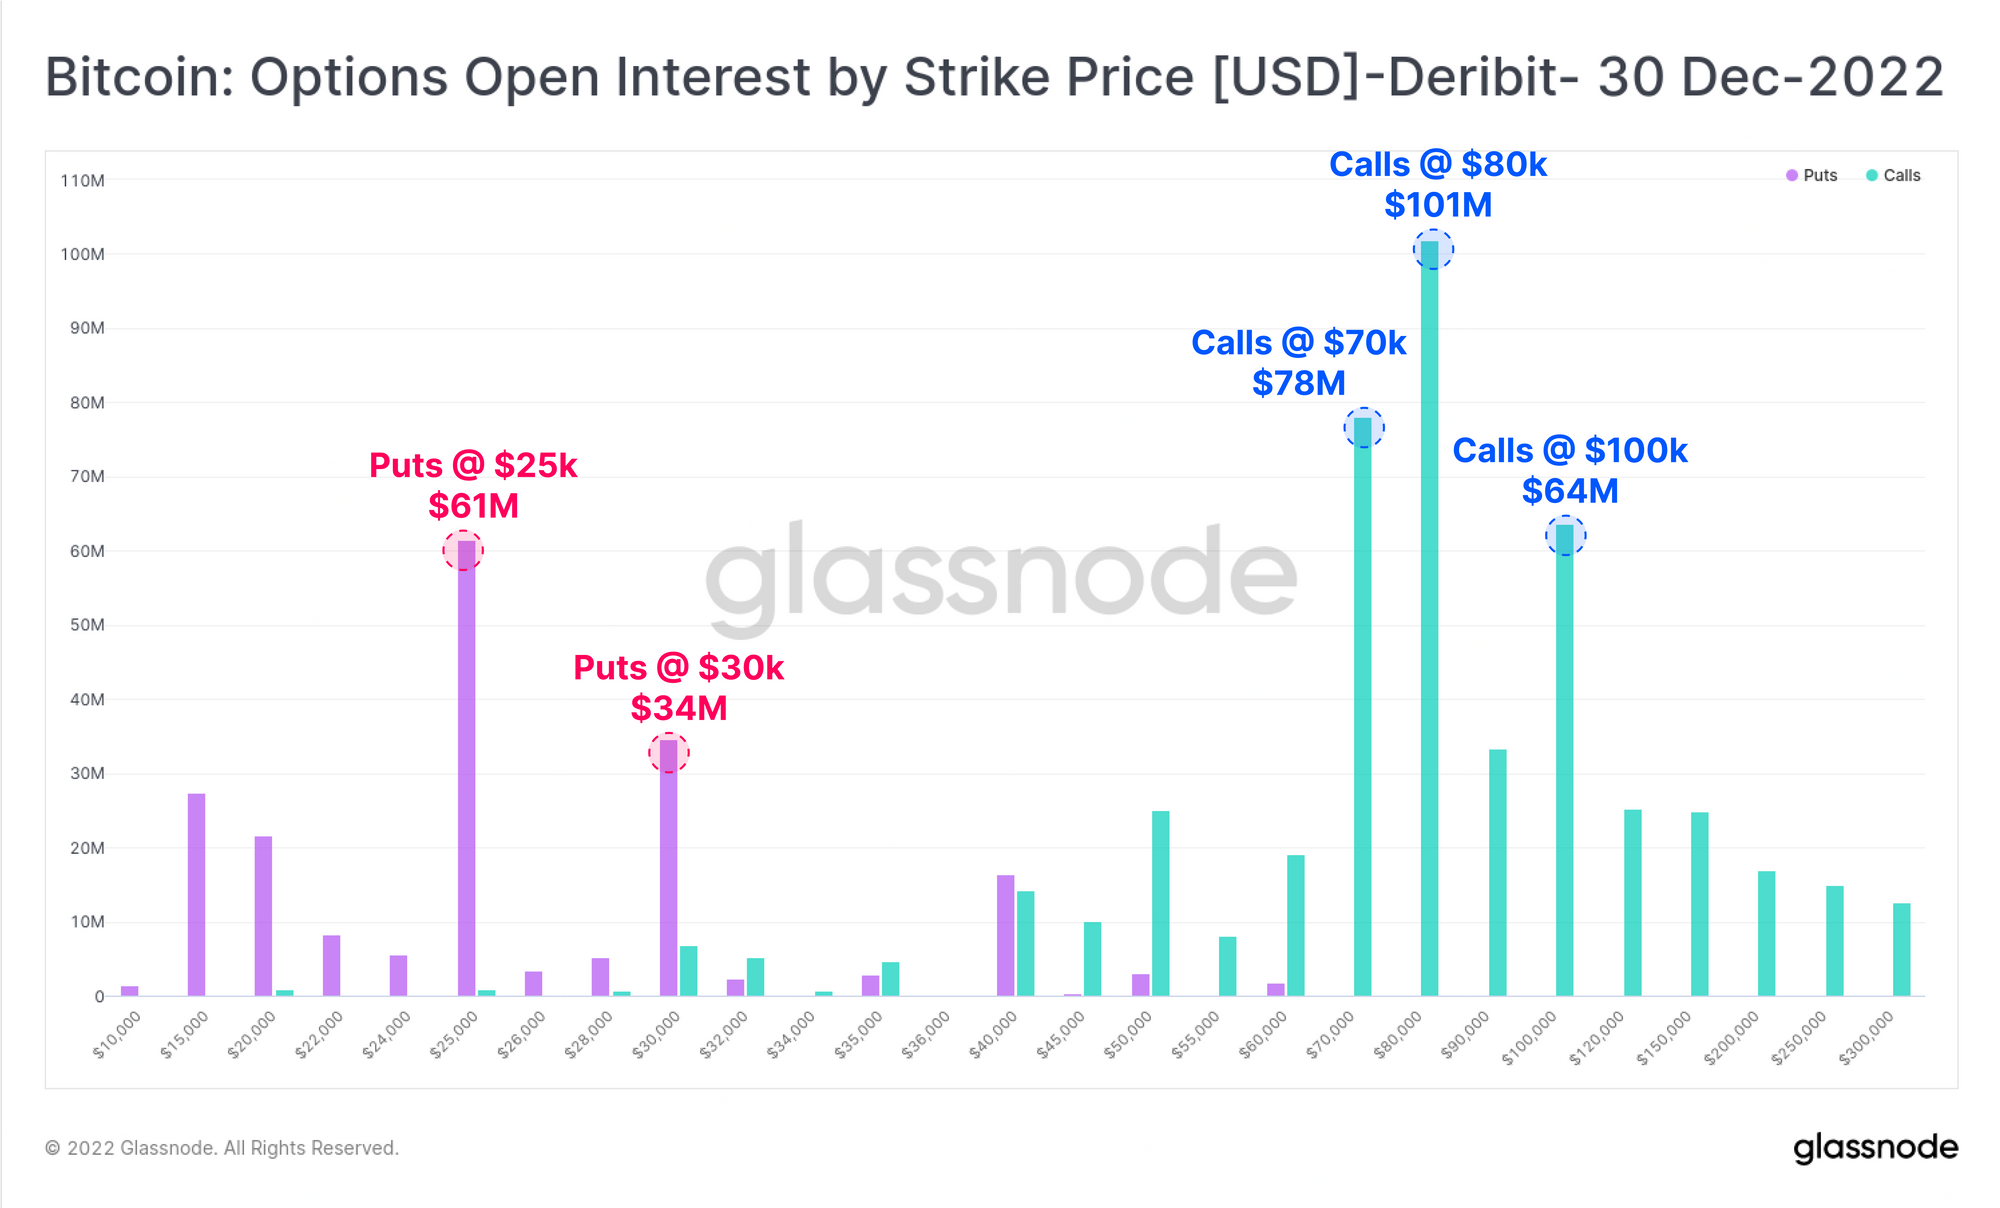 Bitcoin: Options Open Interest by Strike Price [USD]- Deribit- 30 Dec-2022